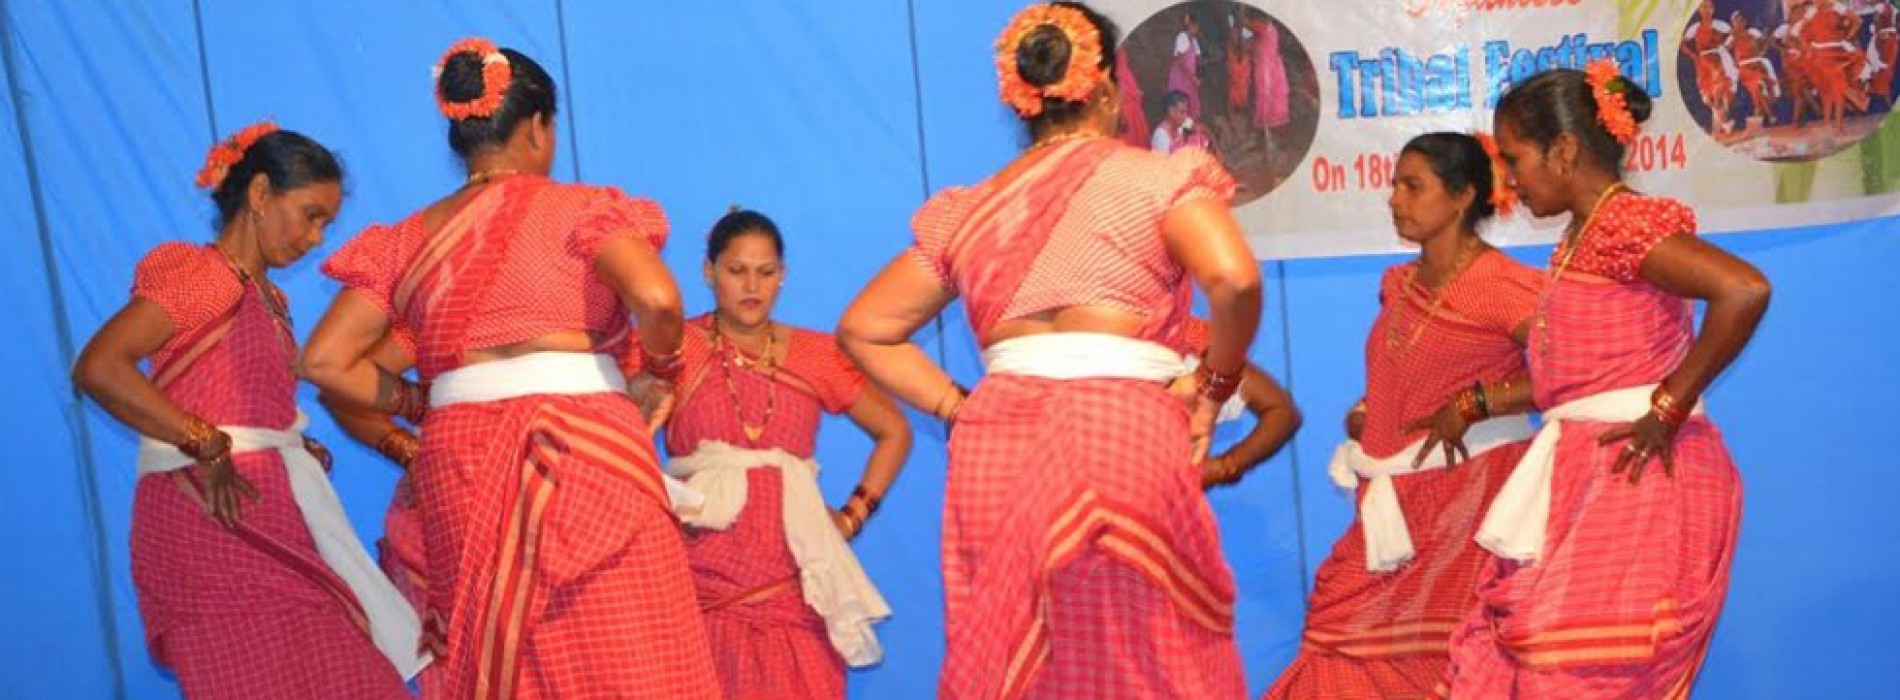 Two day Tribal Festival on January 7-8, 2017 at Xeldem – Goa